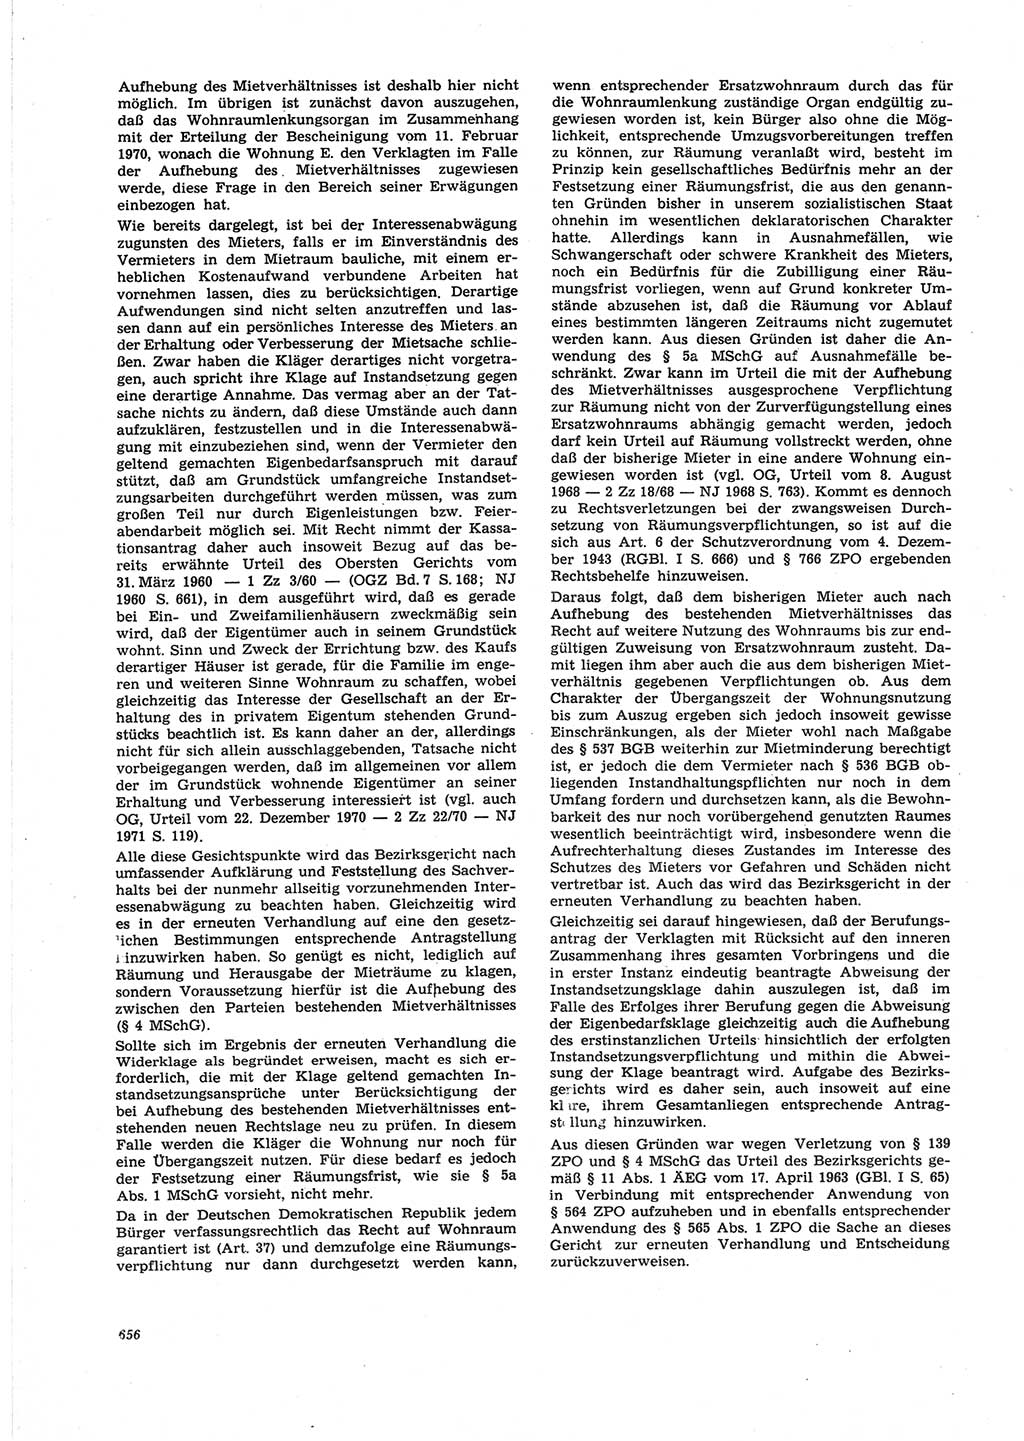 Neue Justiz (NJ), Zeitschrift für Recht und Rechtswissenschaft [Deutsche Demokratische Republik (DDR)], 25. Jahrgang 1971, Seite 656 (NJ DDR 1971, S. 656)